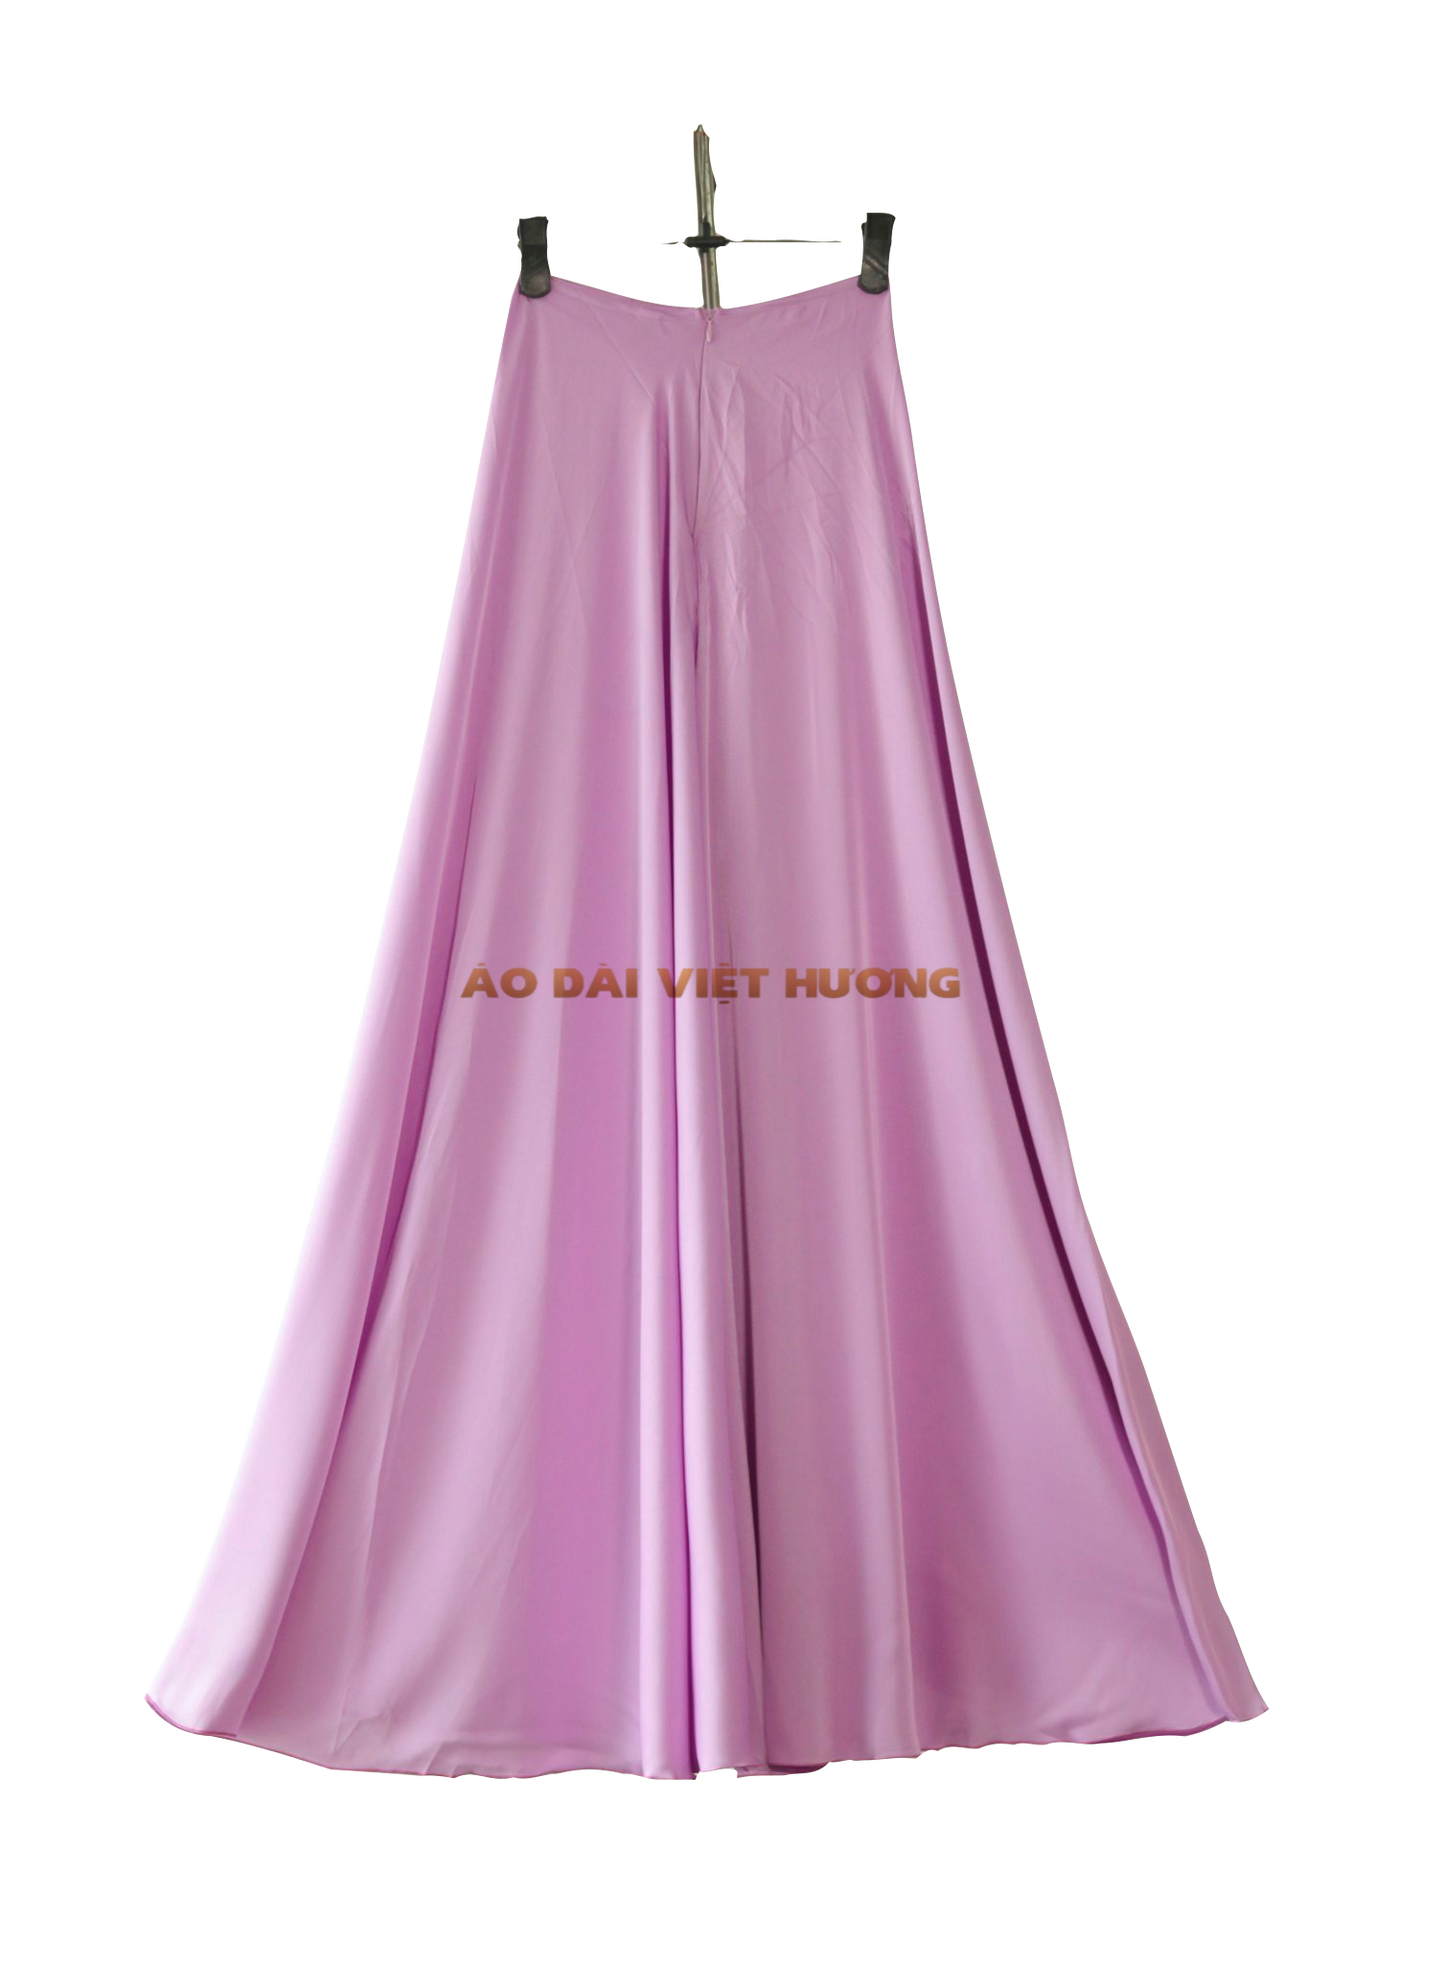 512 - Quần Váy Lụa Thái Tuấn Màu Tím Nhạt (Quần Váy Ống Xéo Lụa Thái Tuấn Tím Nhạt)